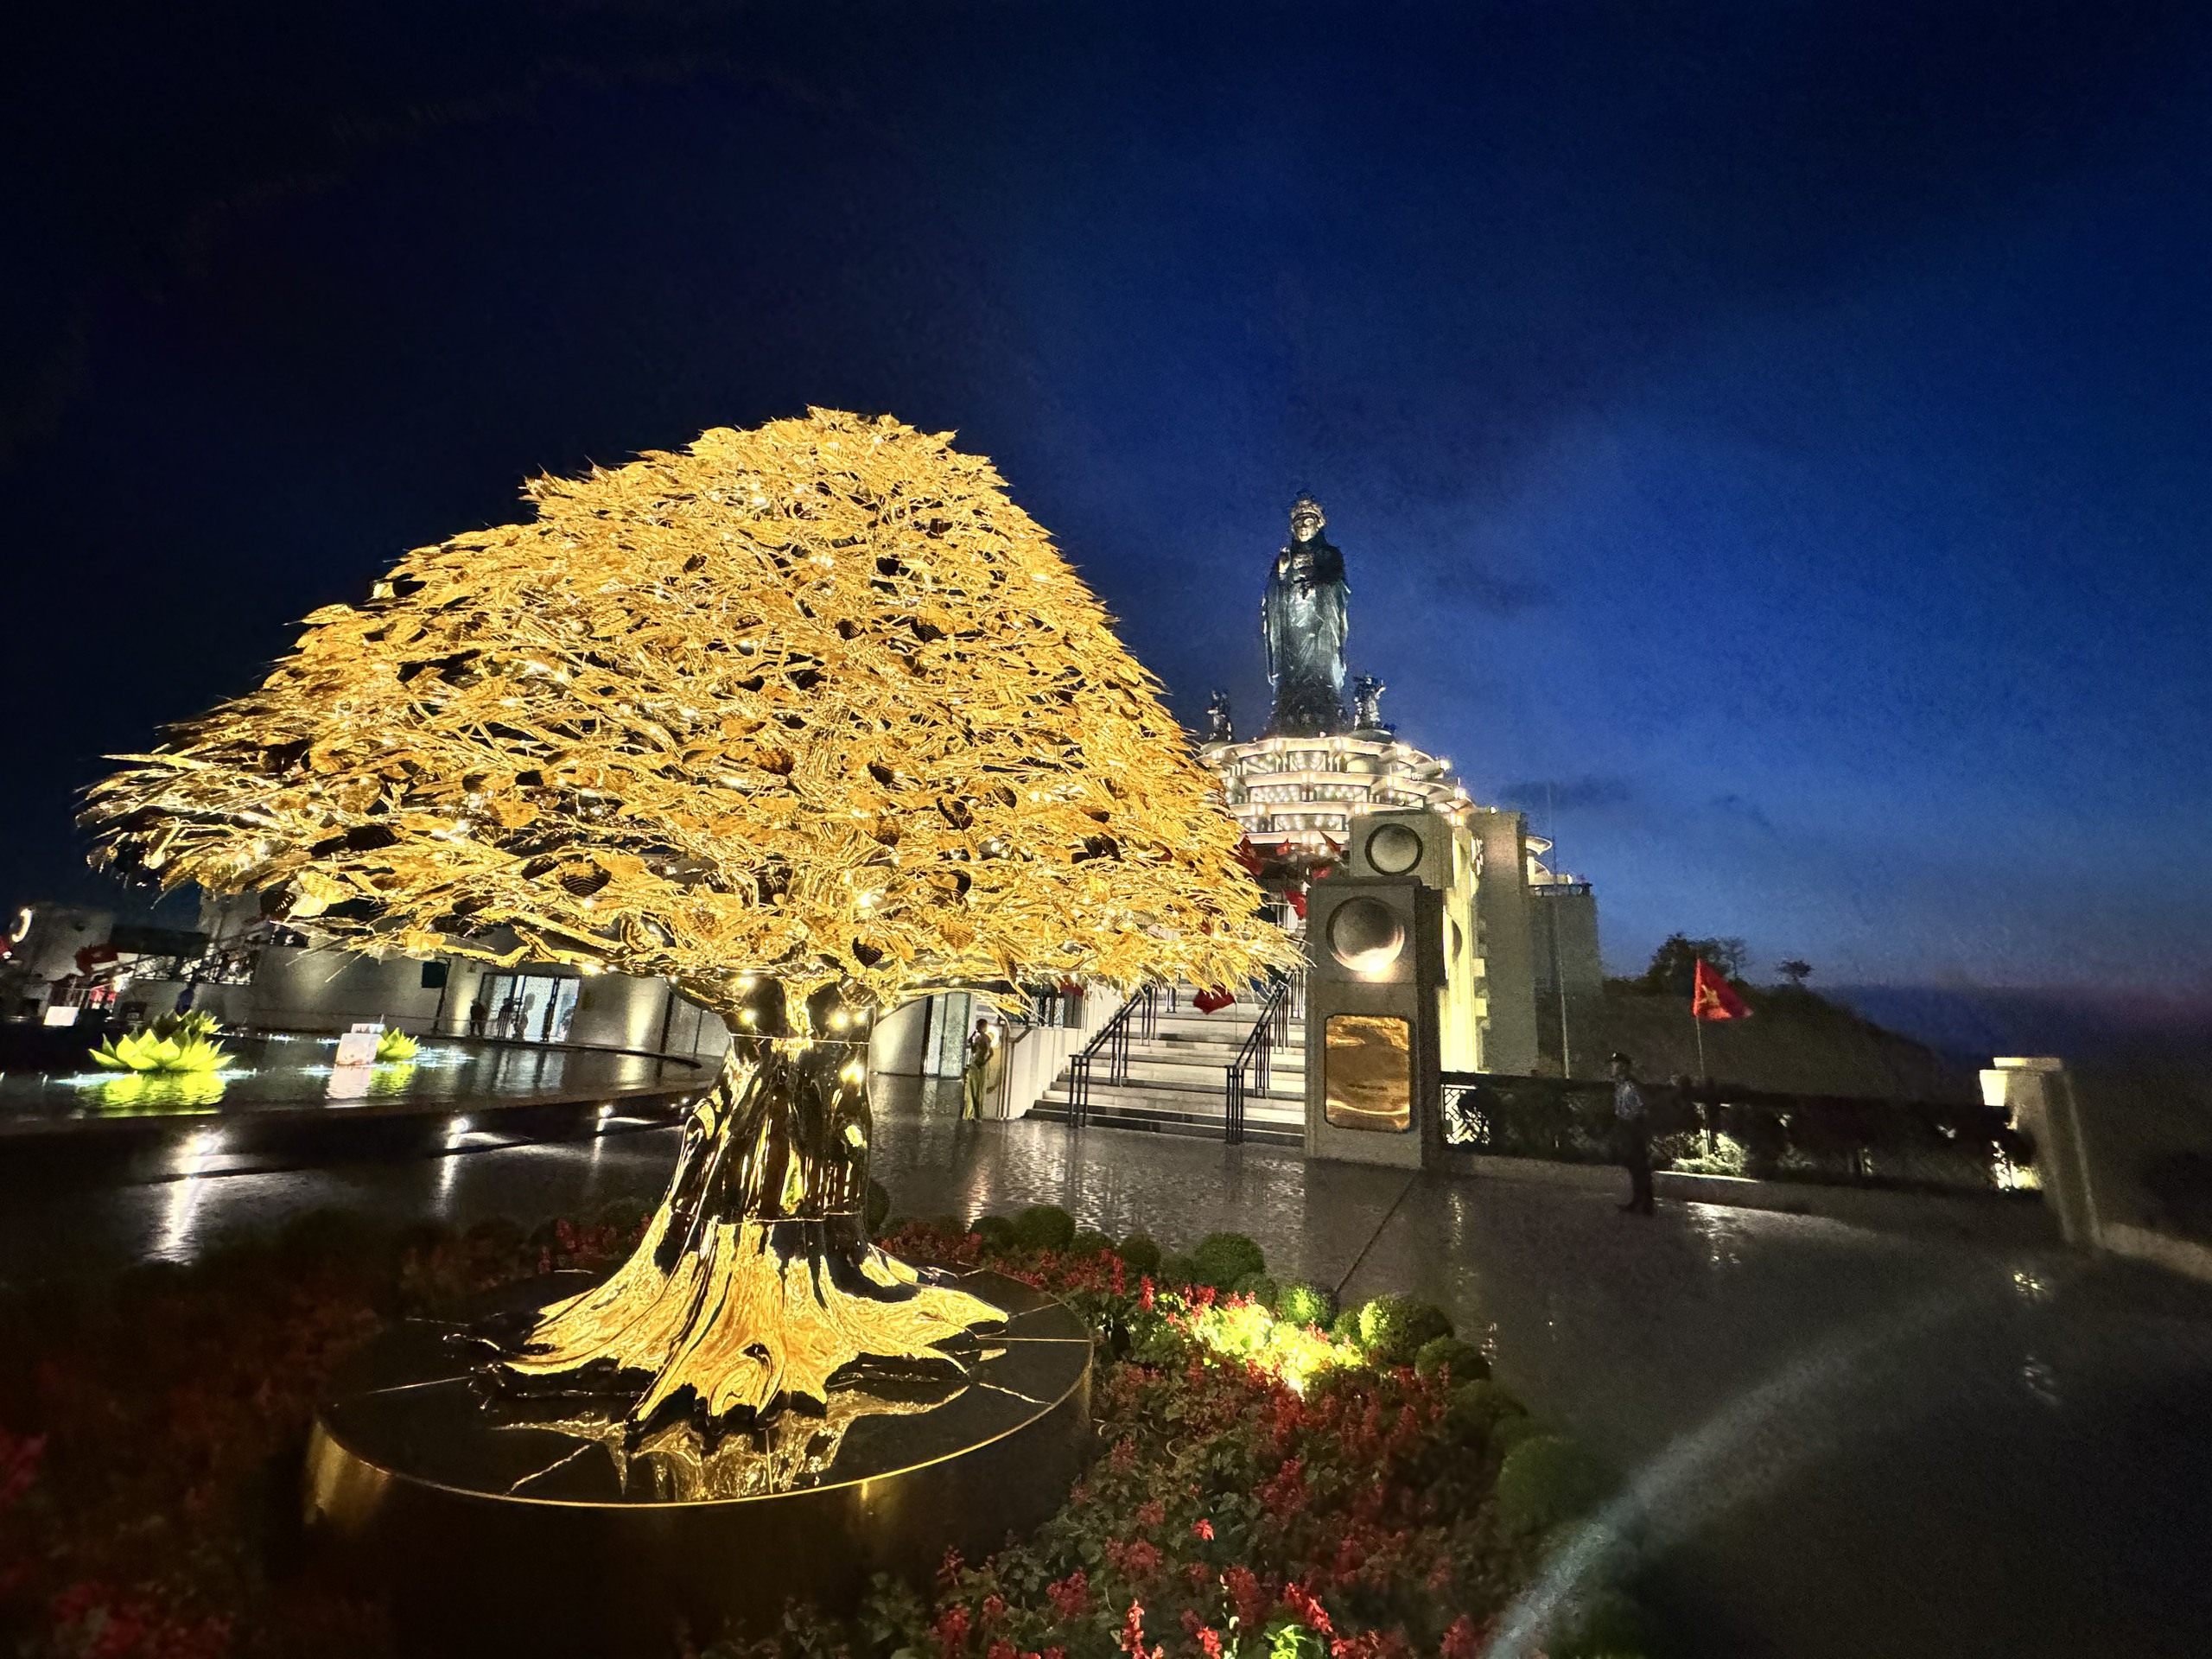 Trung tâm của triển lãm là Cây Bồ Đề được mạ vàng 24K, cao 3,6m là kiệt tác sản xuất bằng phương pháp thủ công, được Sách kỷ lục Việt Nam trao chứng nhận 